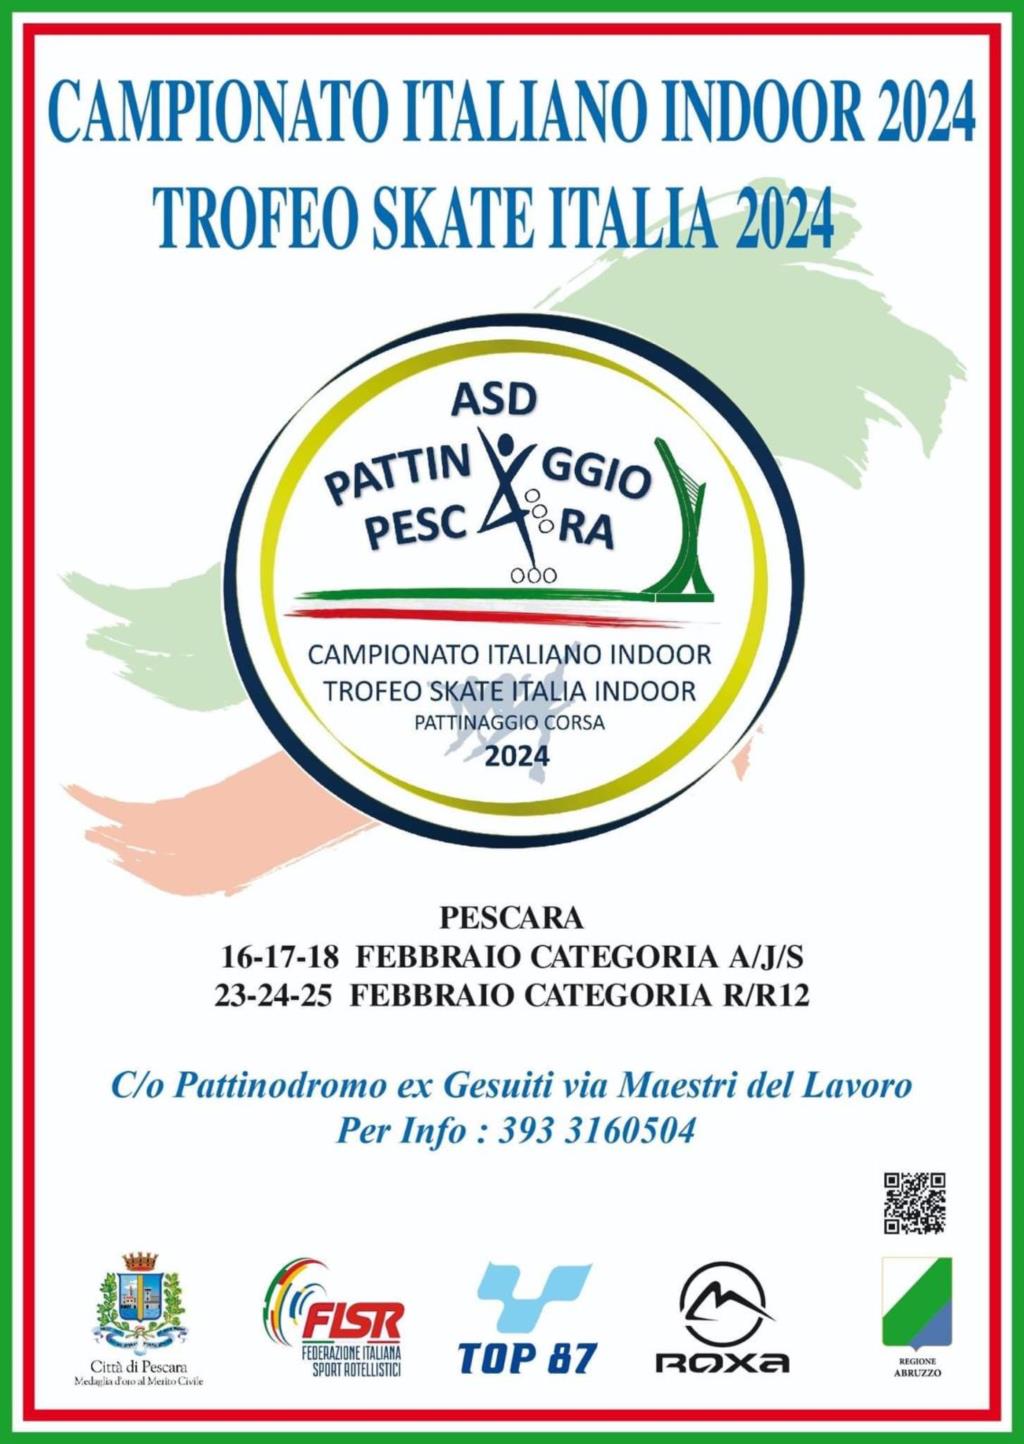 Pattinaggio: al via a Pescara i Campionati Italiani di Corsa Indoor 2024